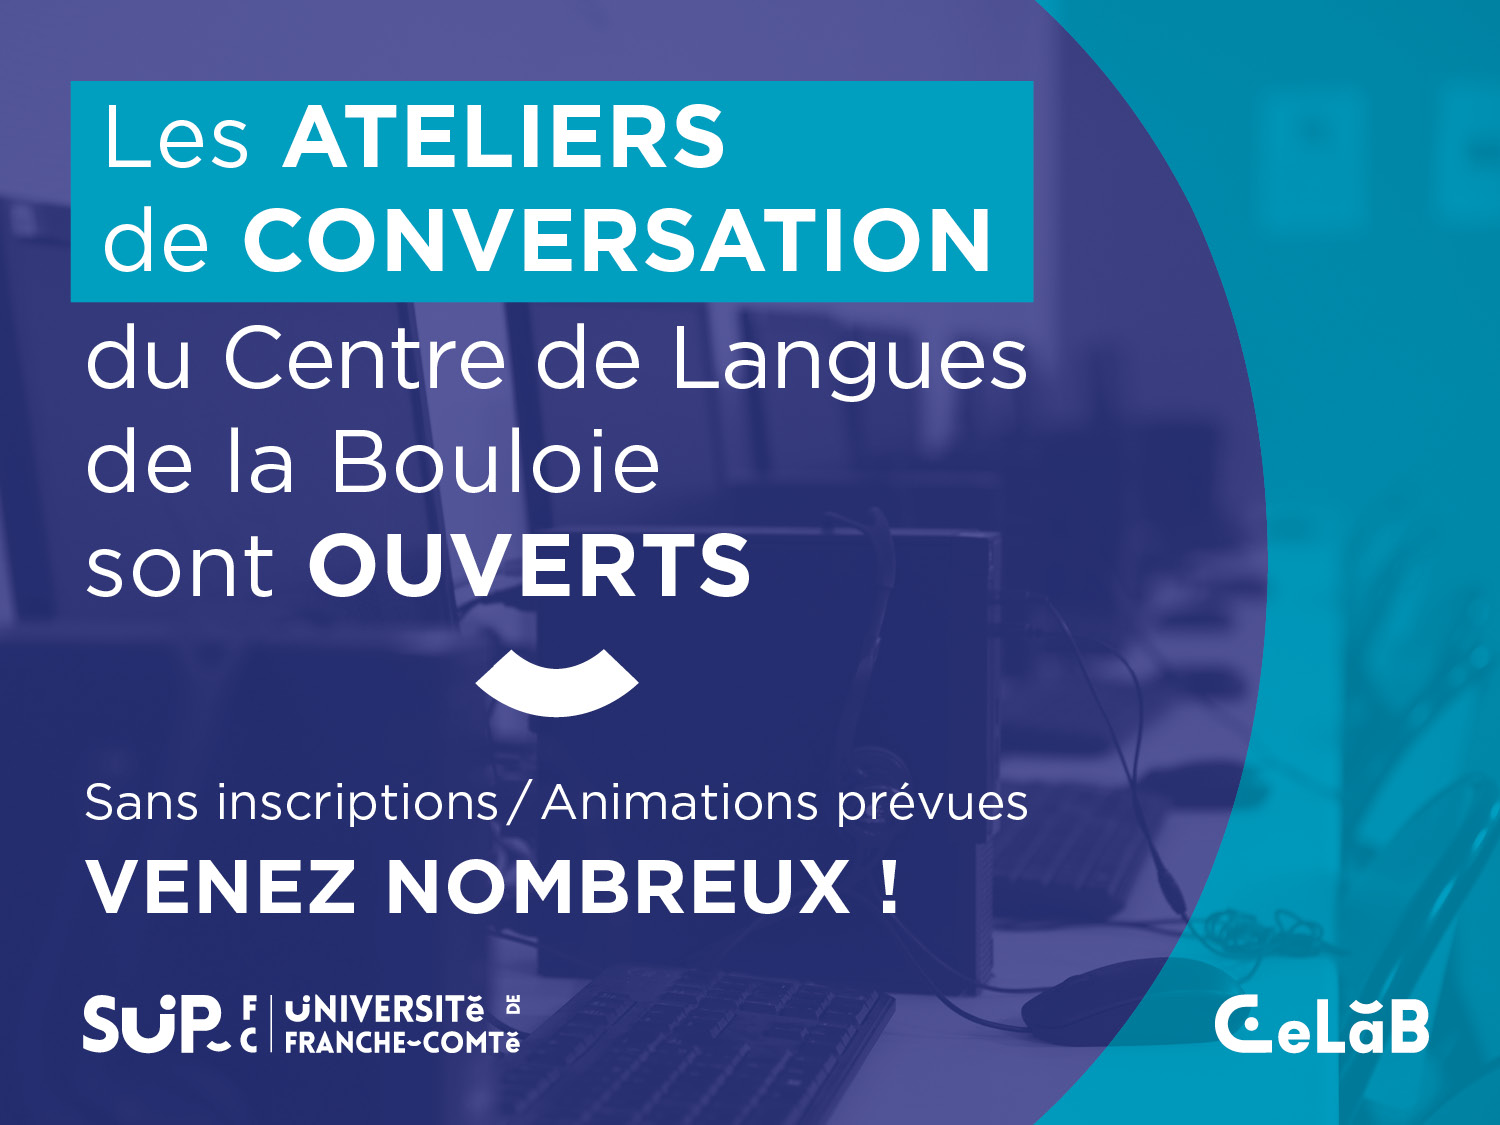 Les ateliers de conversation du Centre de Langues de la Bouloie (CeLab) sont ouverts